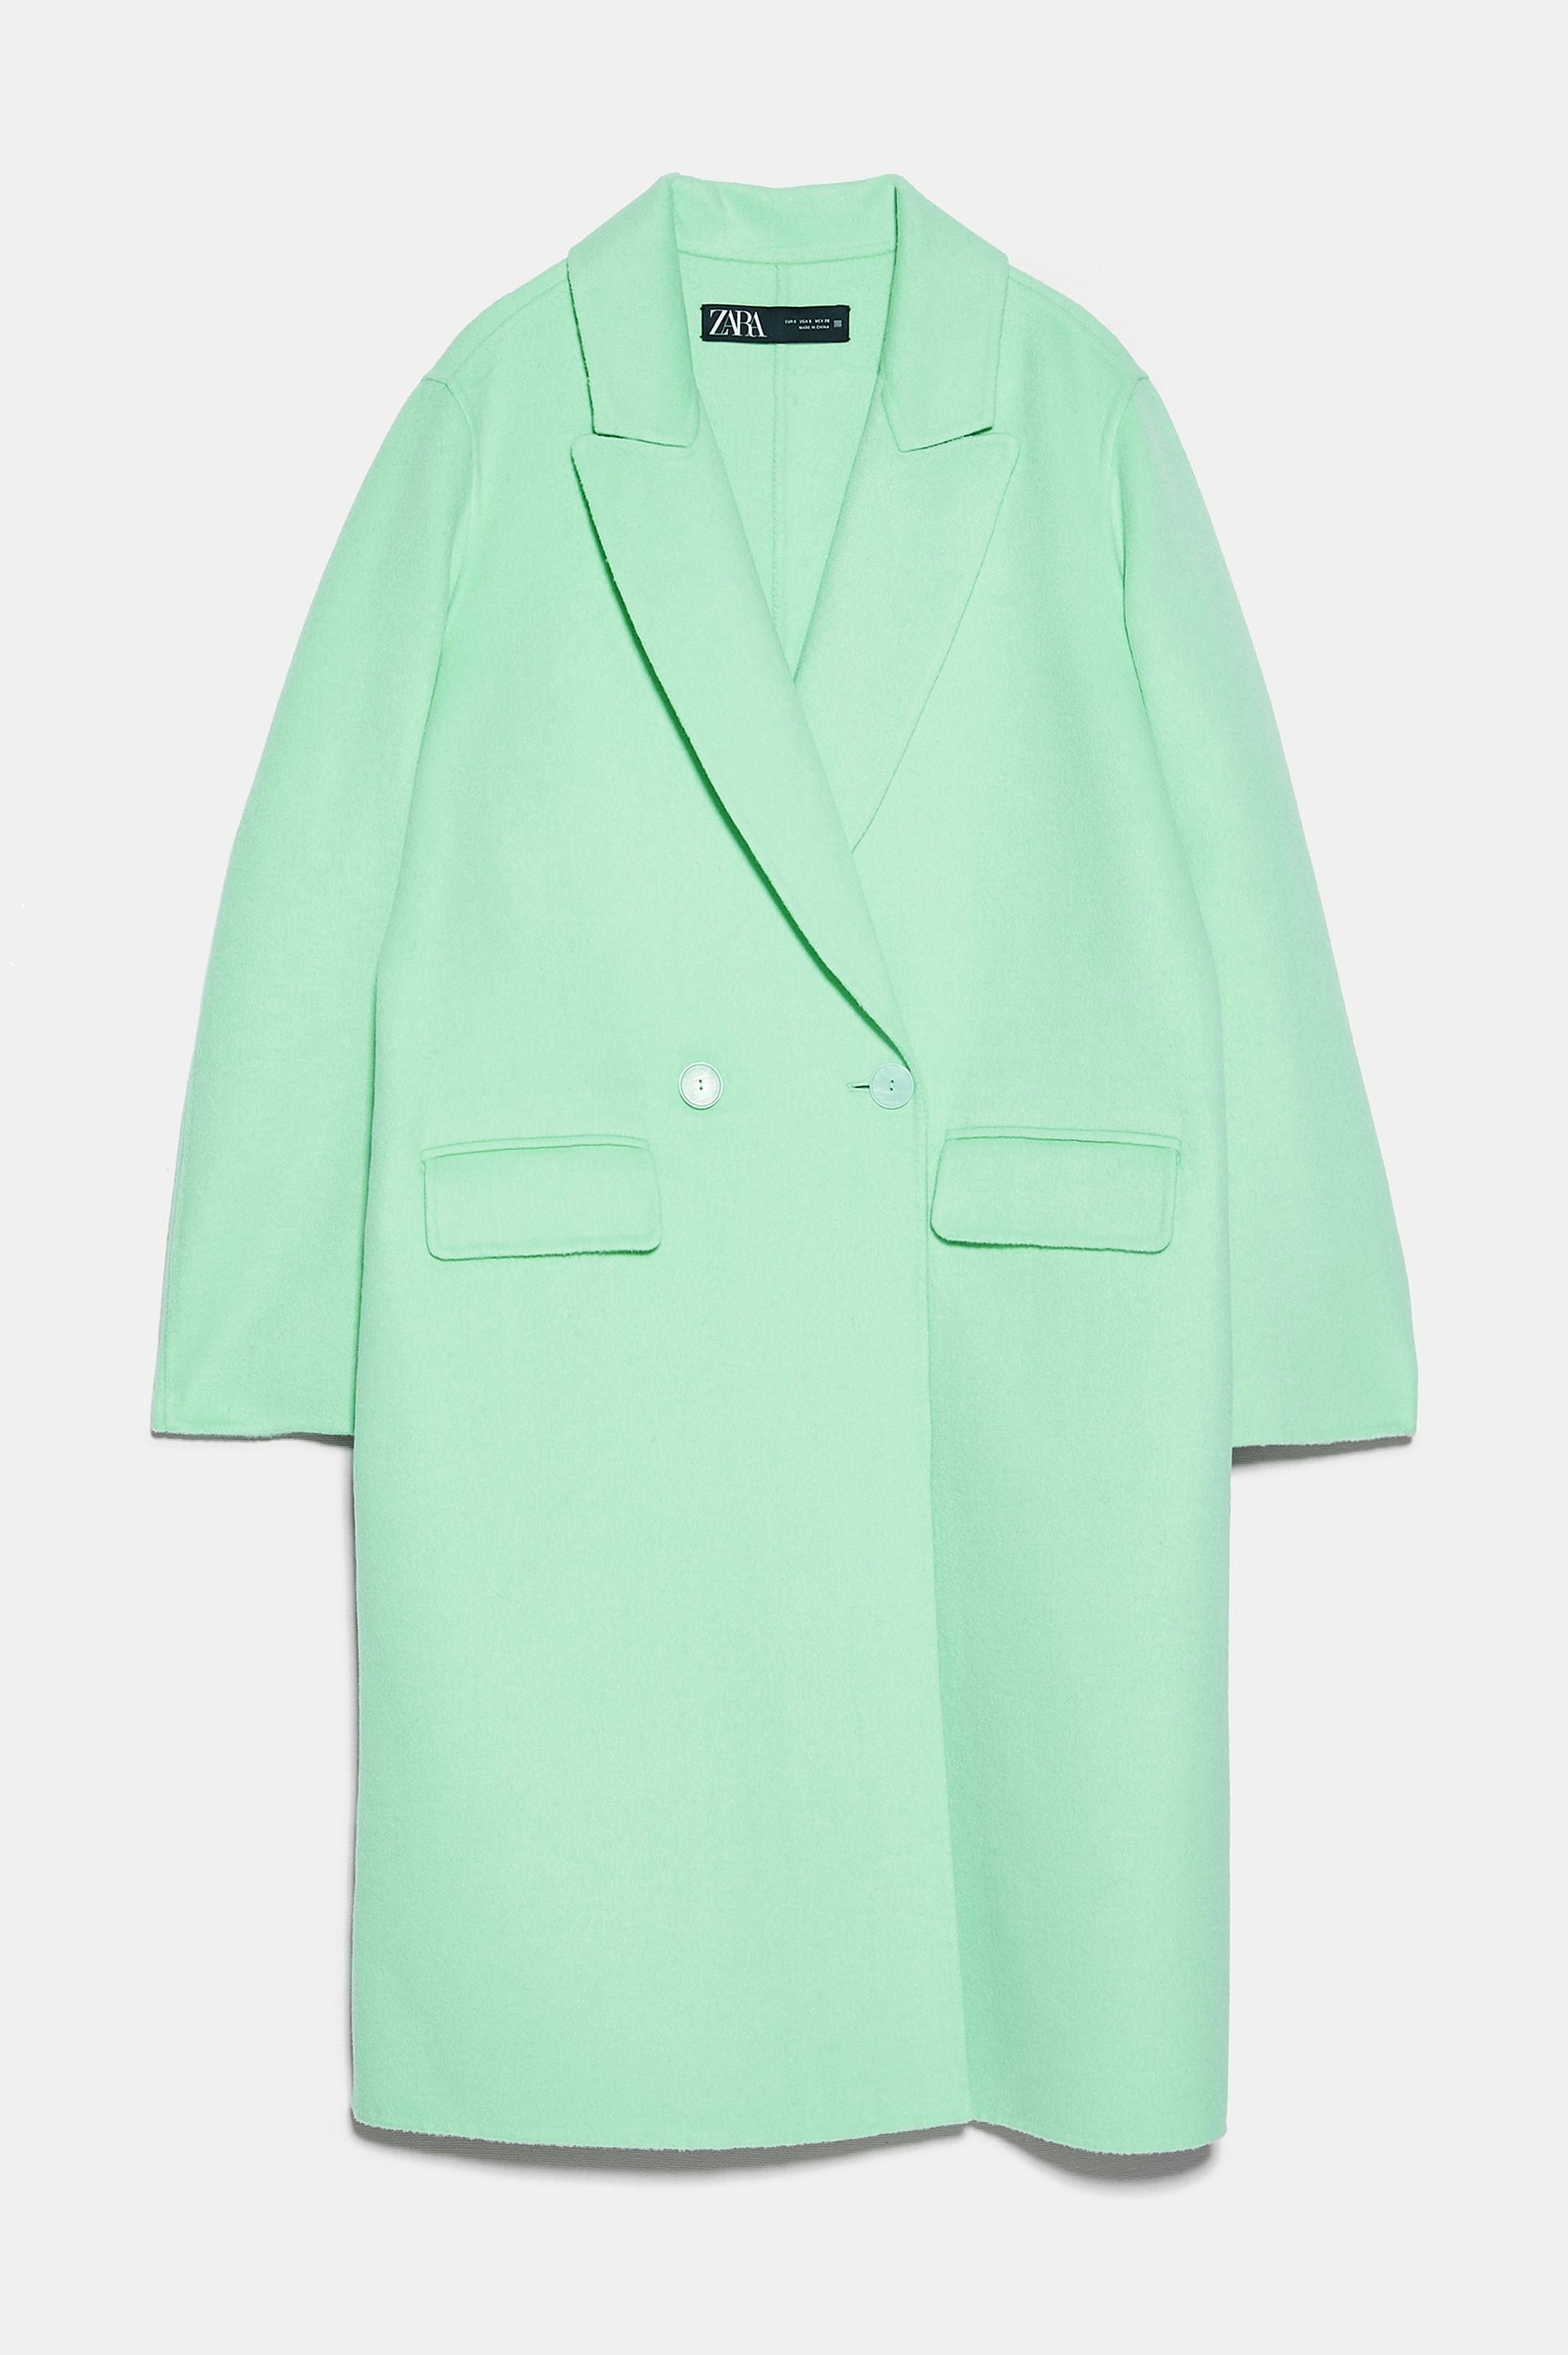 11 Zara Winter Coats That You Can Wear 